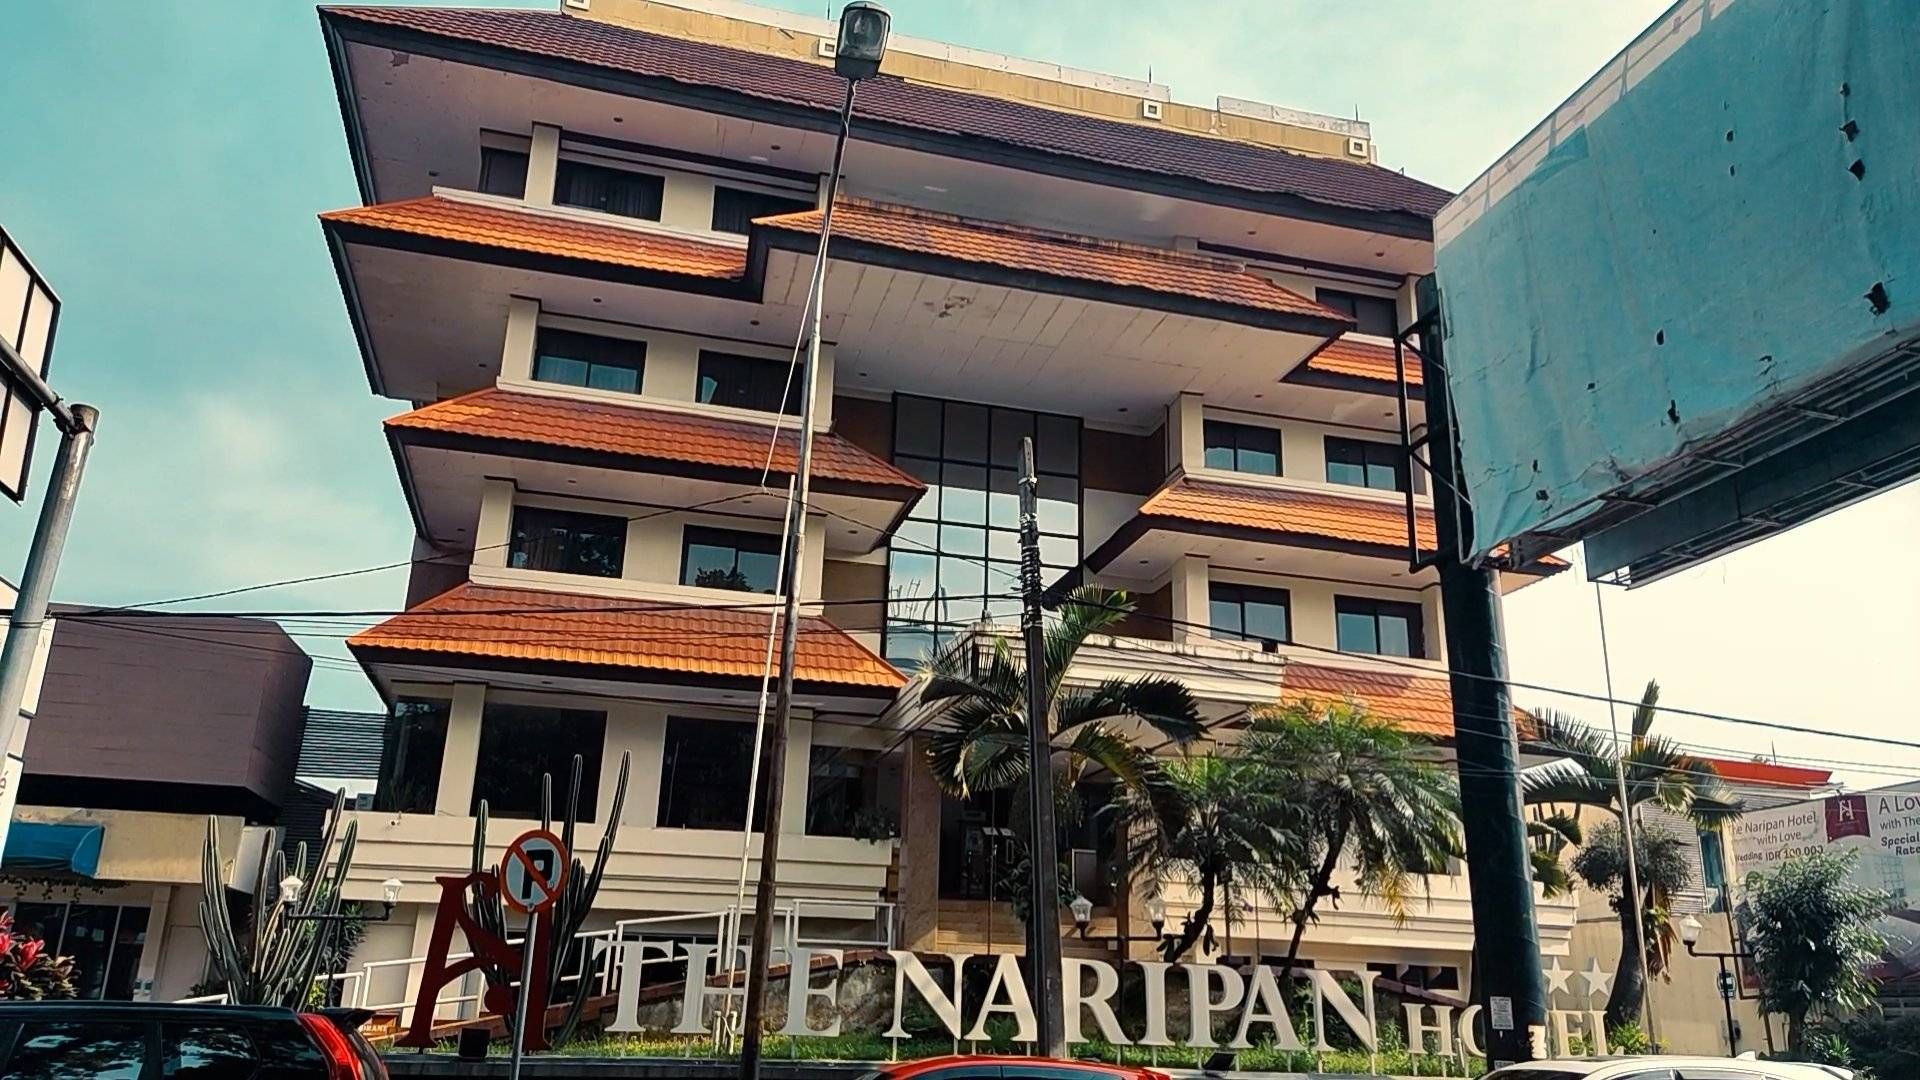 The Naripan Hotel Bandung